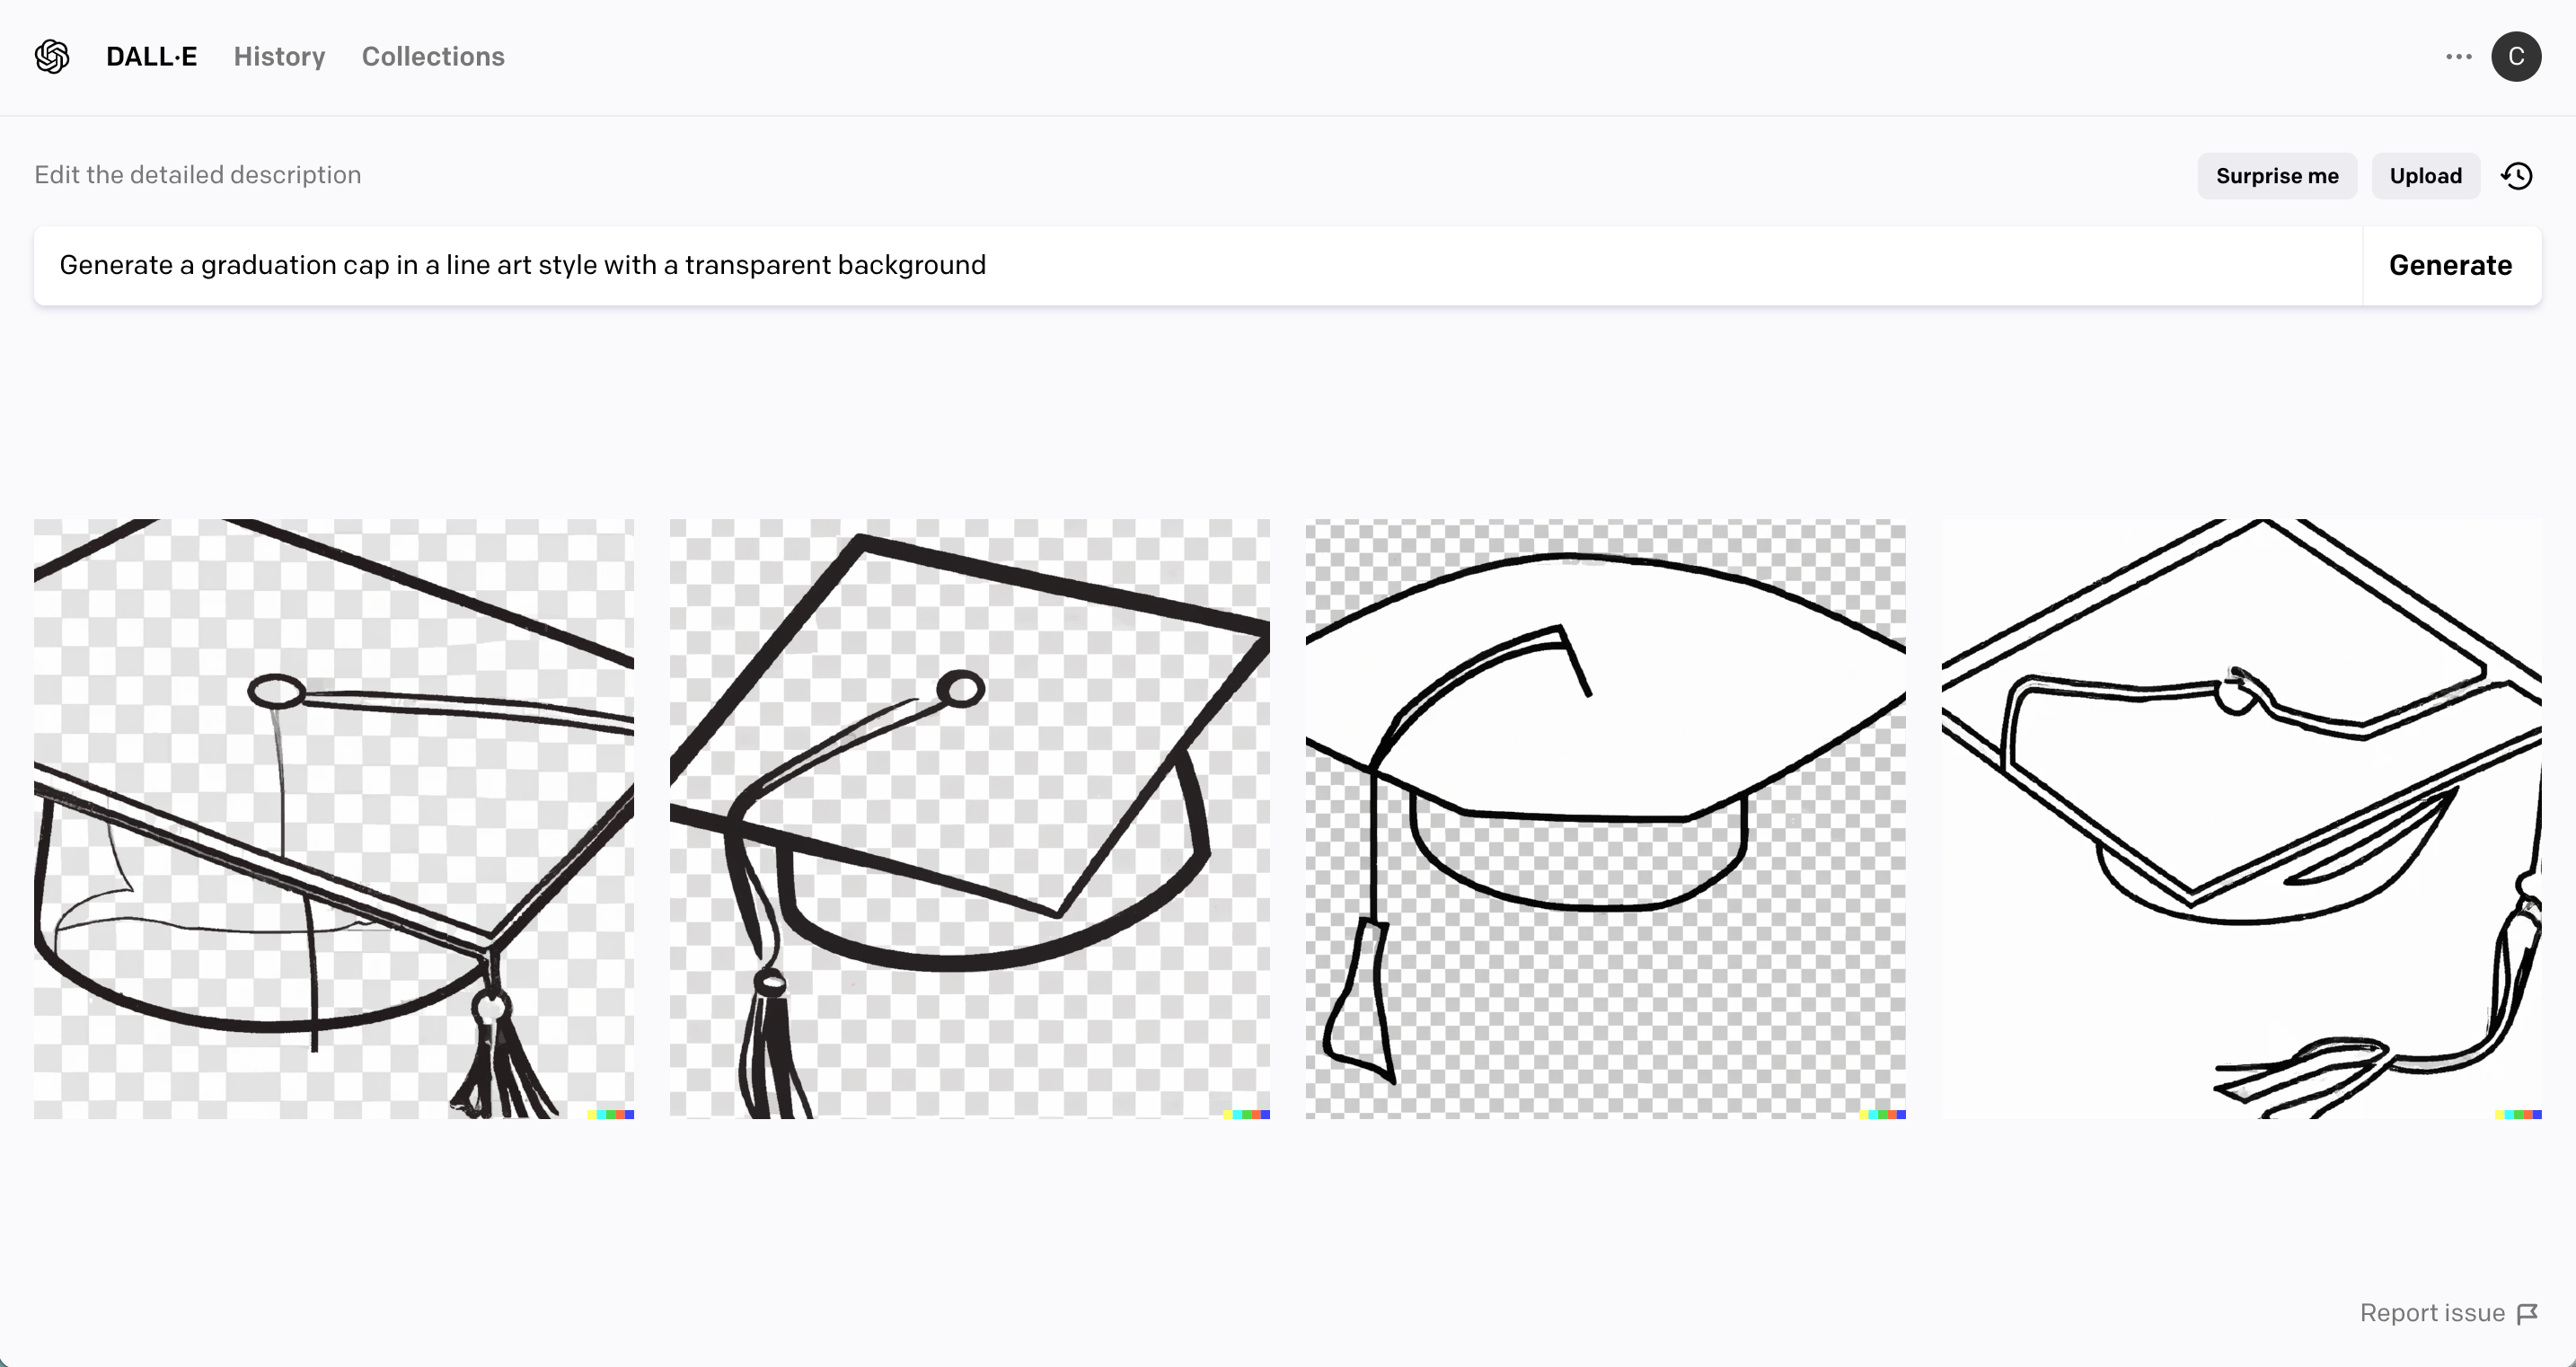 Screenshot - Dall-E 2 Example - Graduation cap clipart - cuttingforbusiness.com.